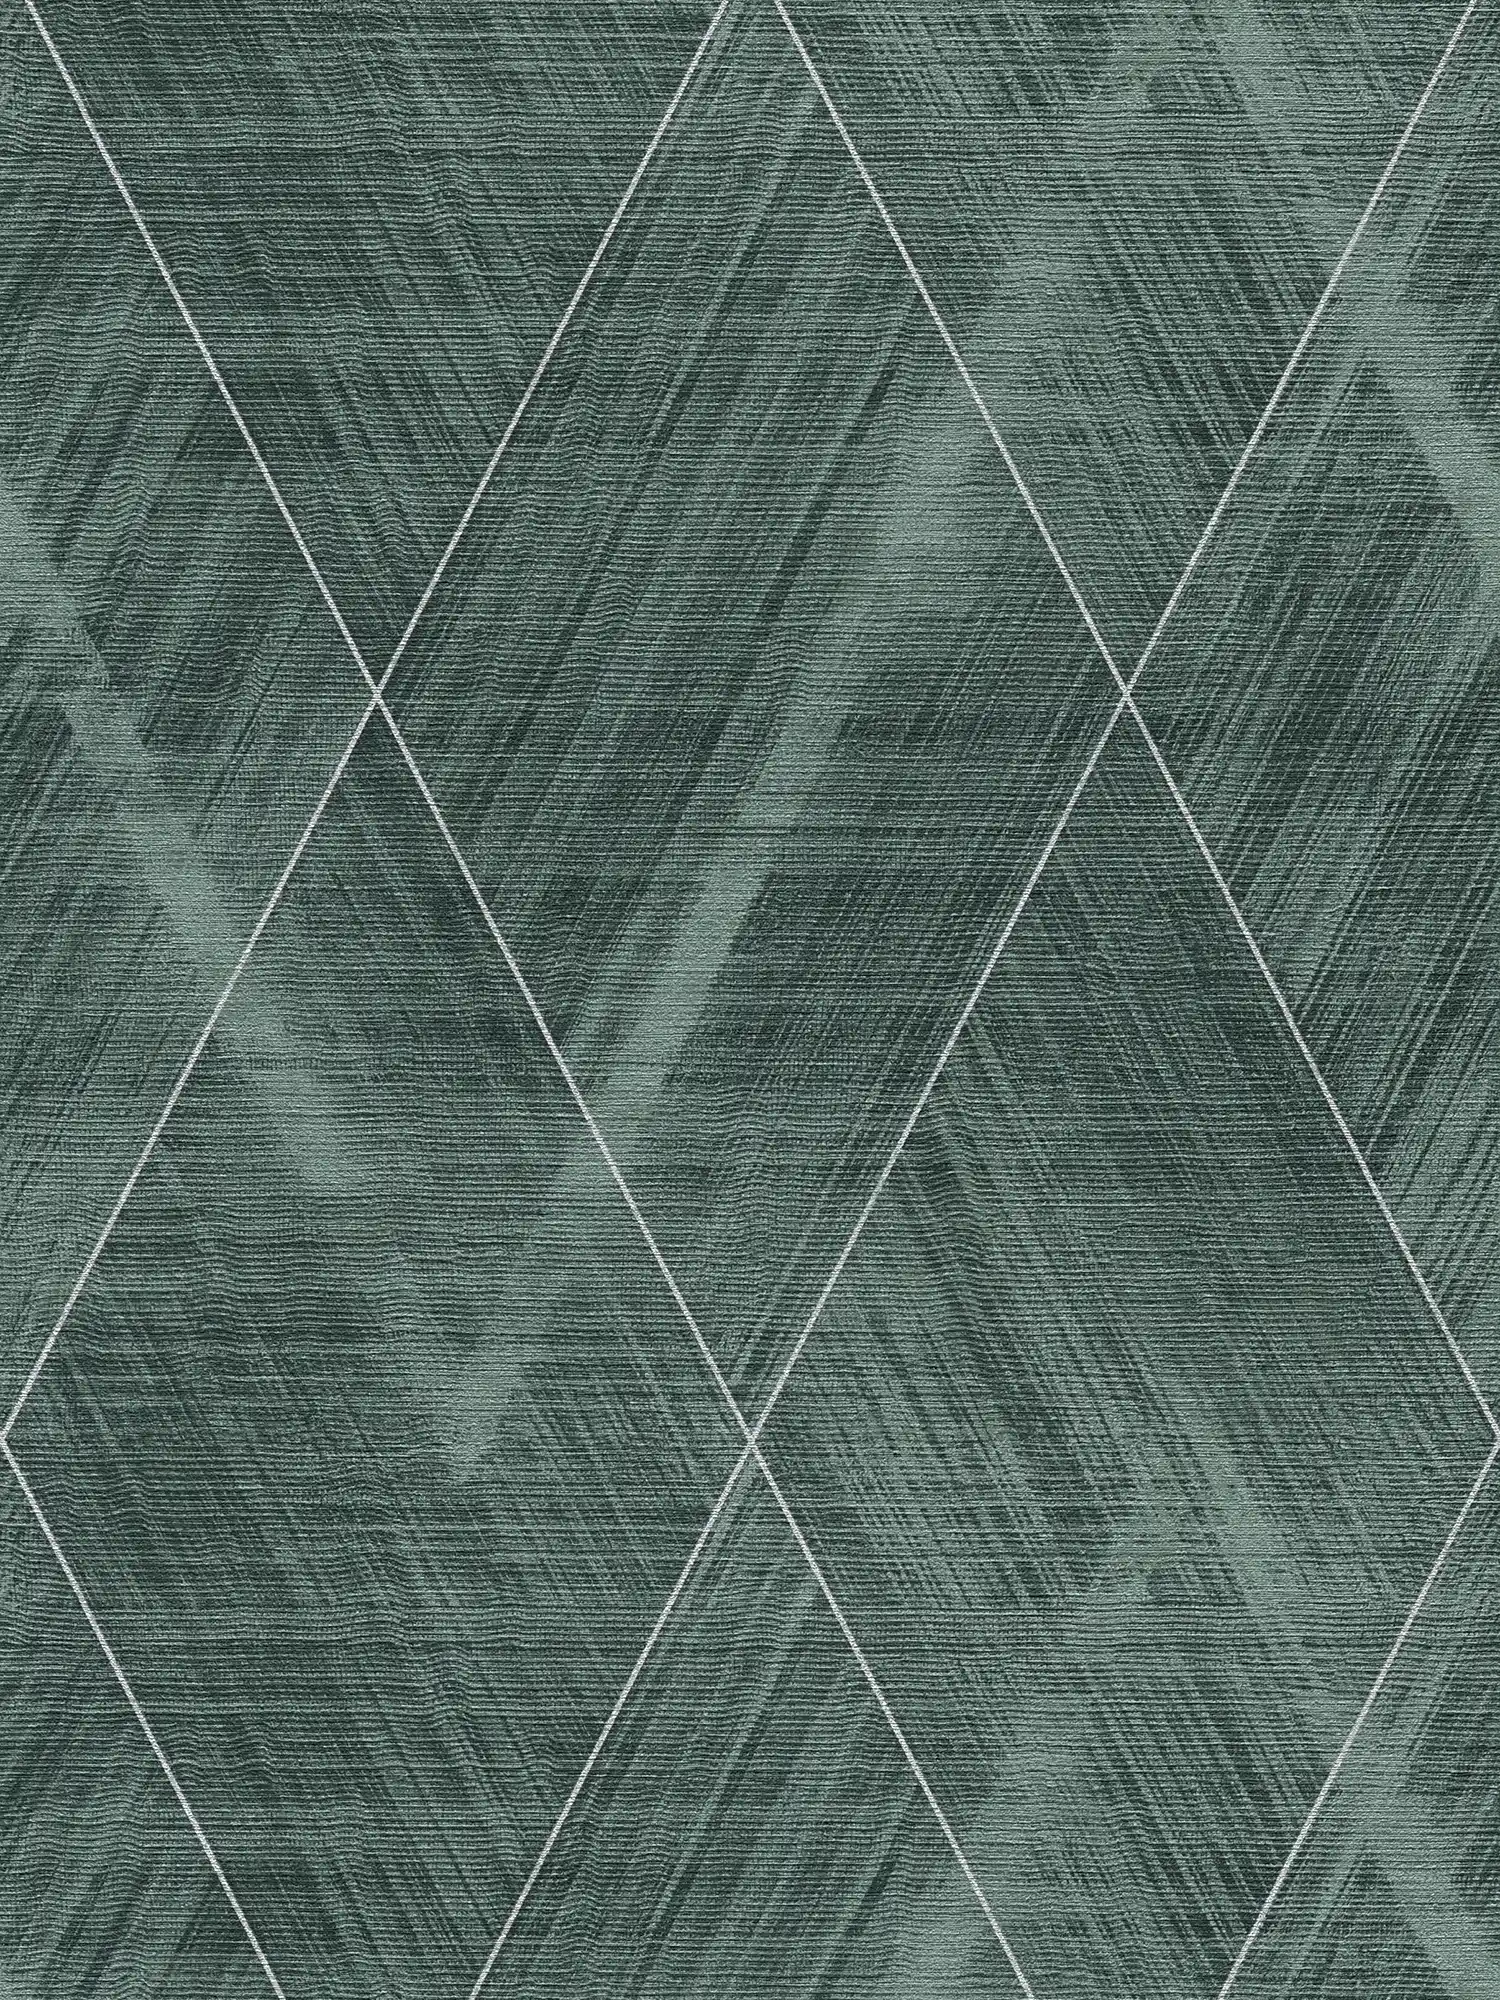         Papier peint losange avec aspect textile chiné - métallique, vert
    